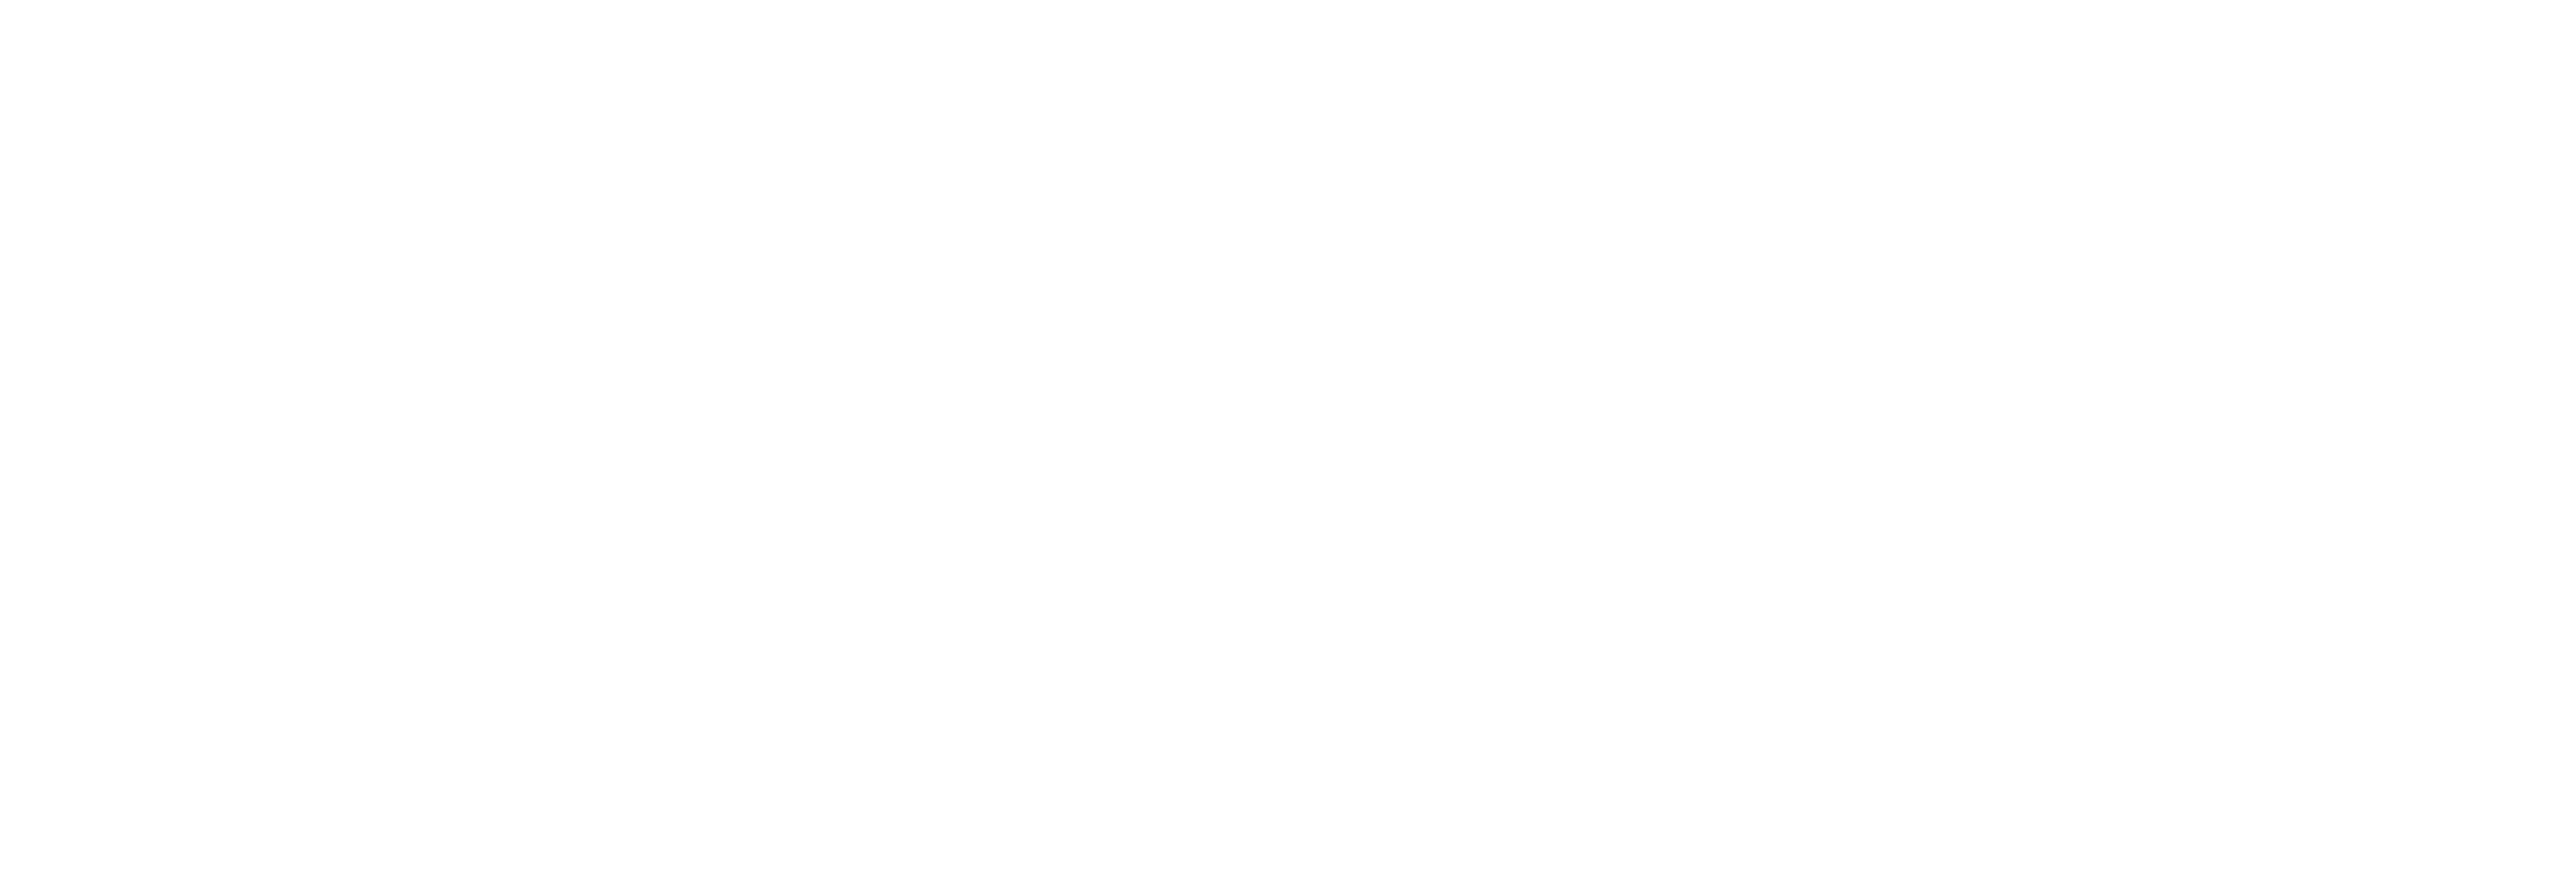 FOFRMA2